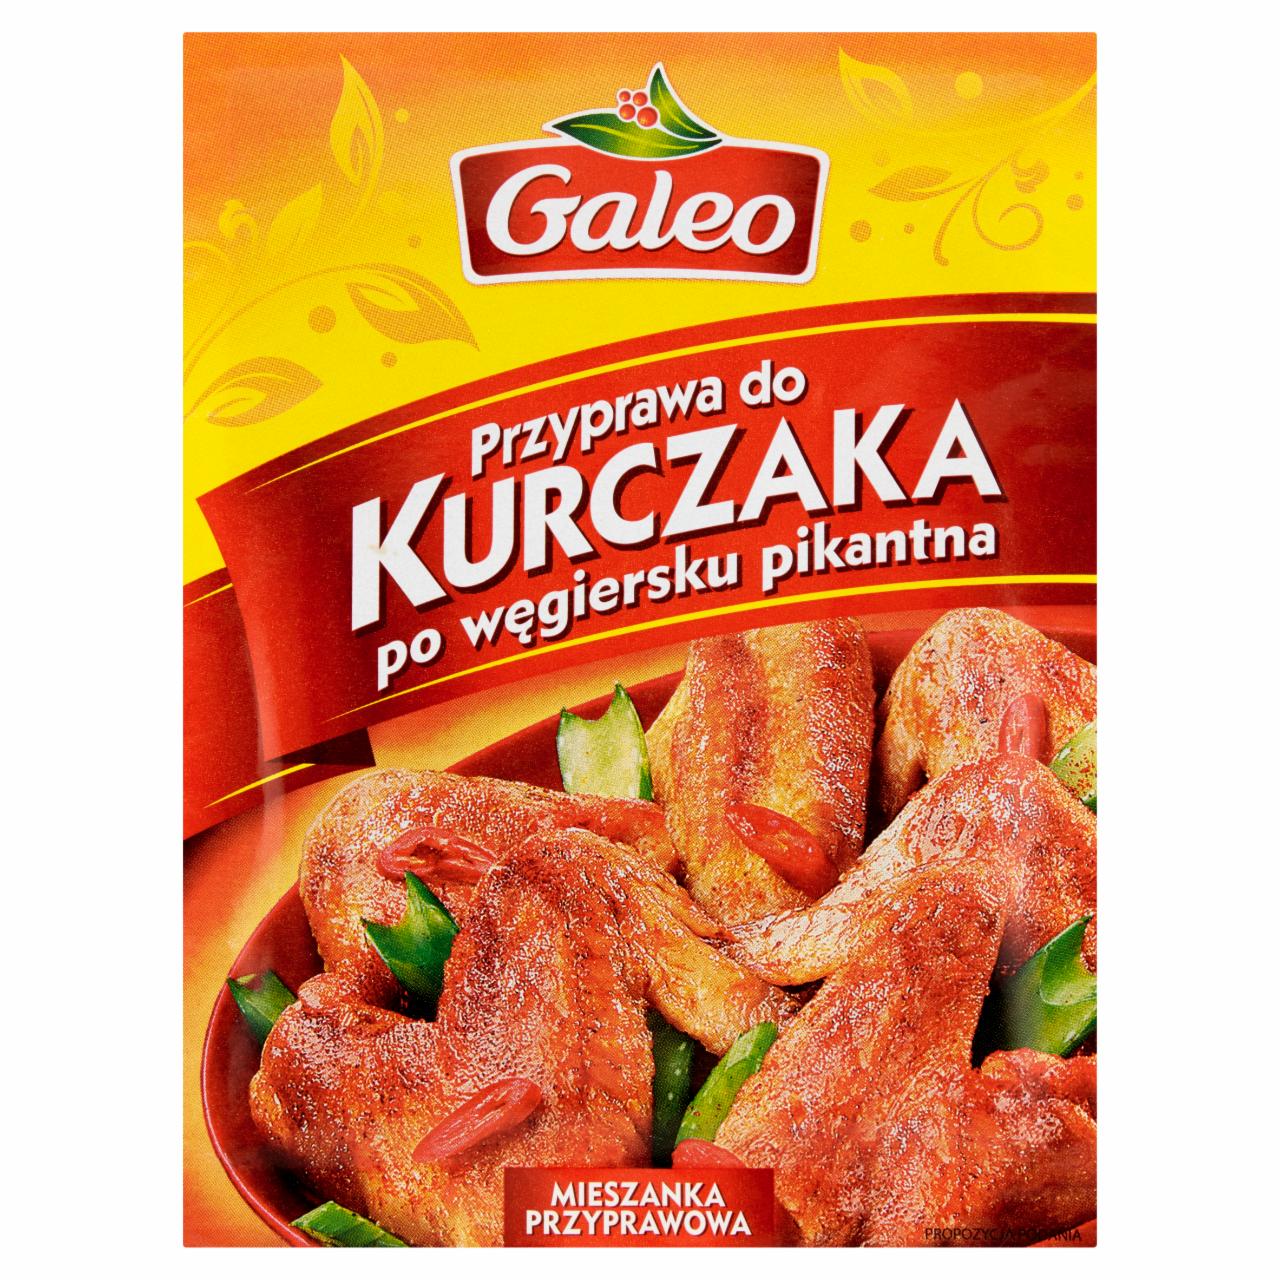 Zdjęcia - Galeo Przyprawa do kurczaka po węgiersku pikantna 16 g